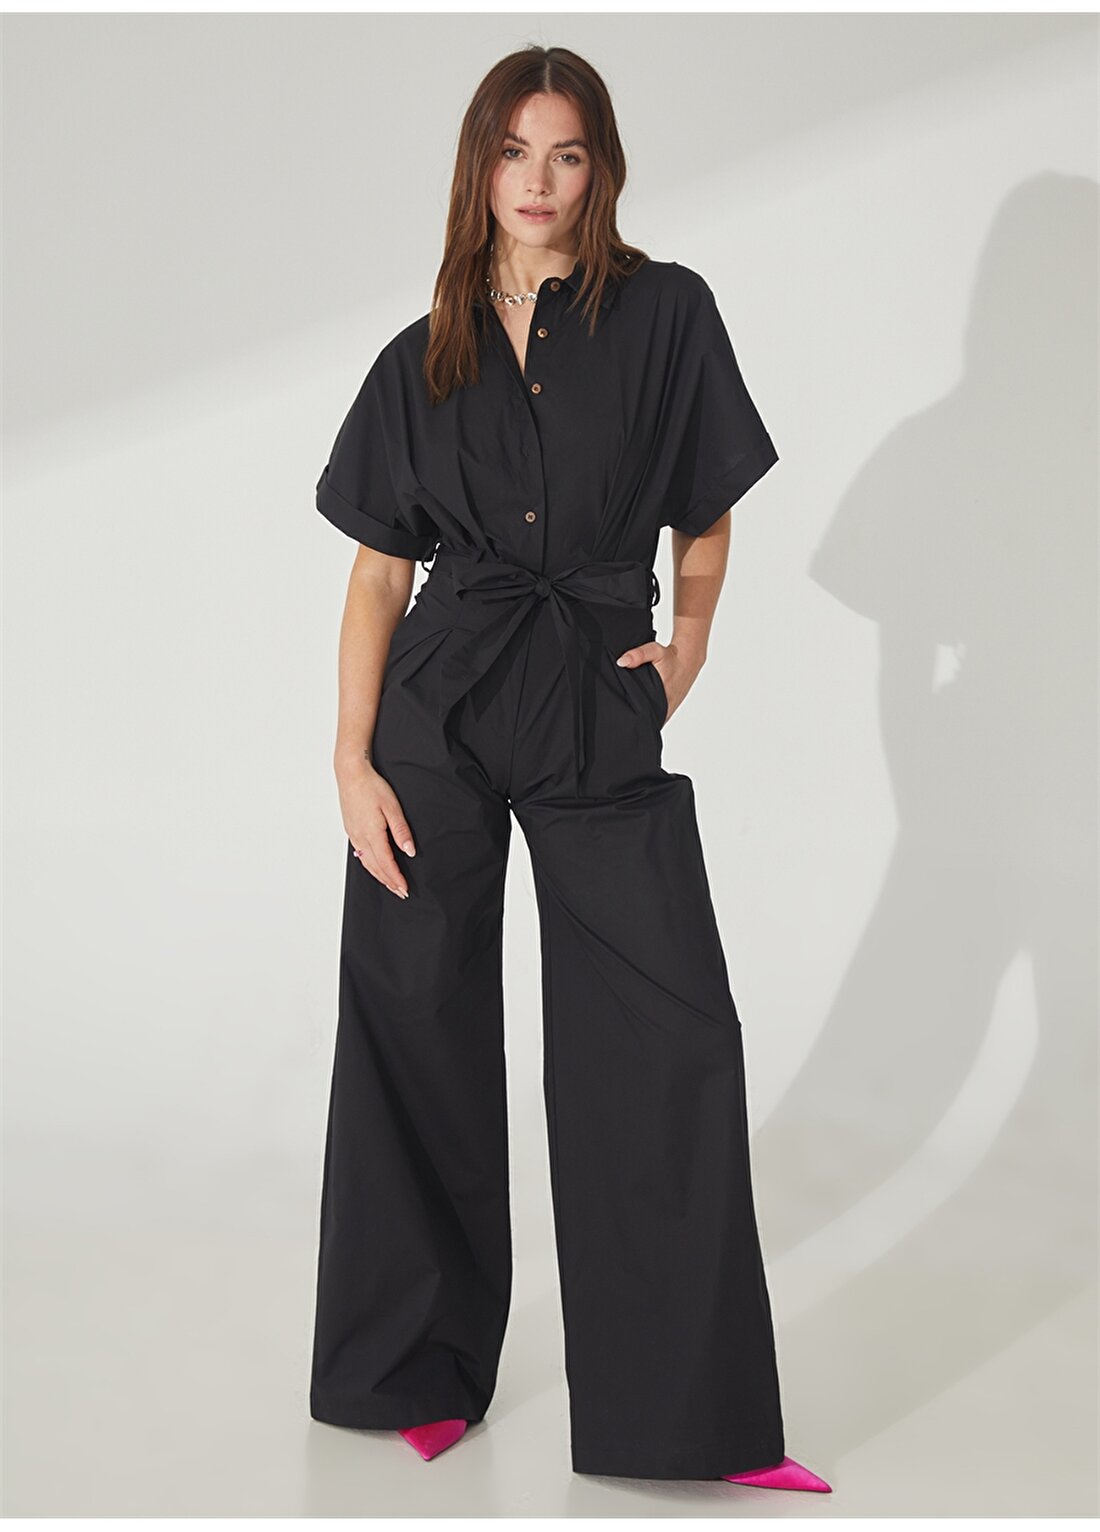 Akep Kalp Yaka Düz Siyah Diz Altı Kadın Elbise VSKD01134